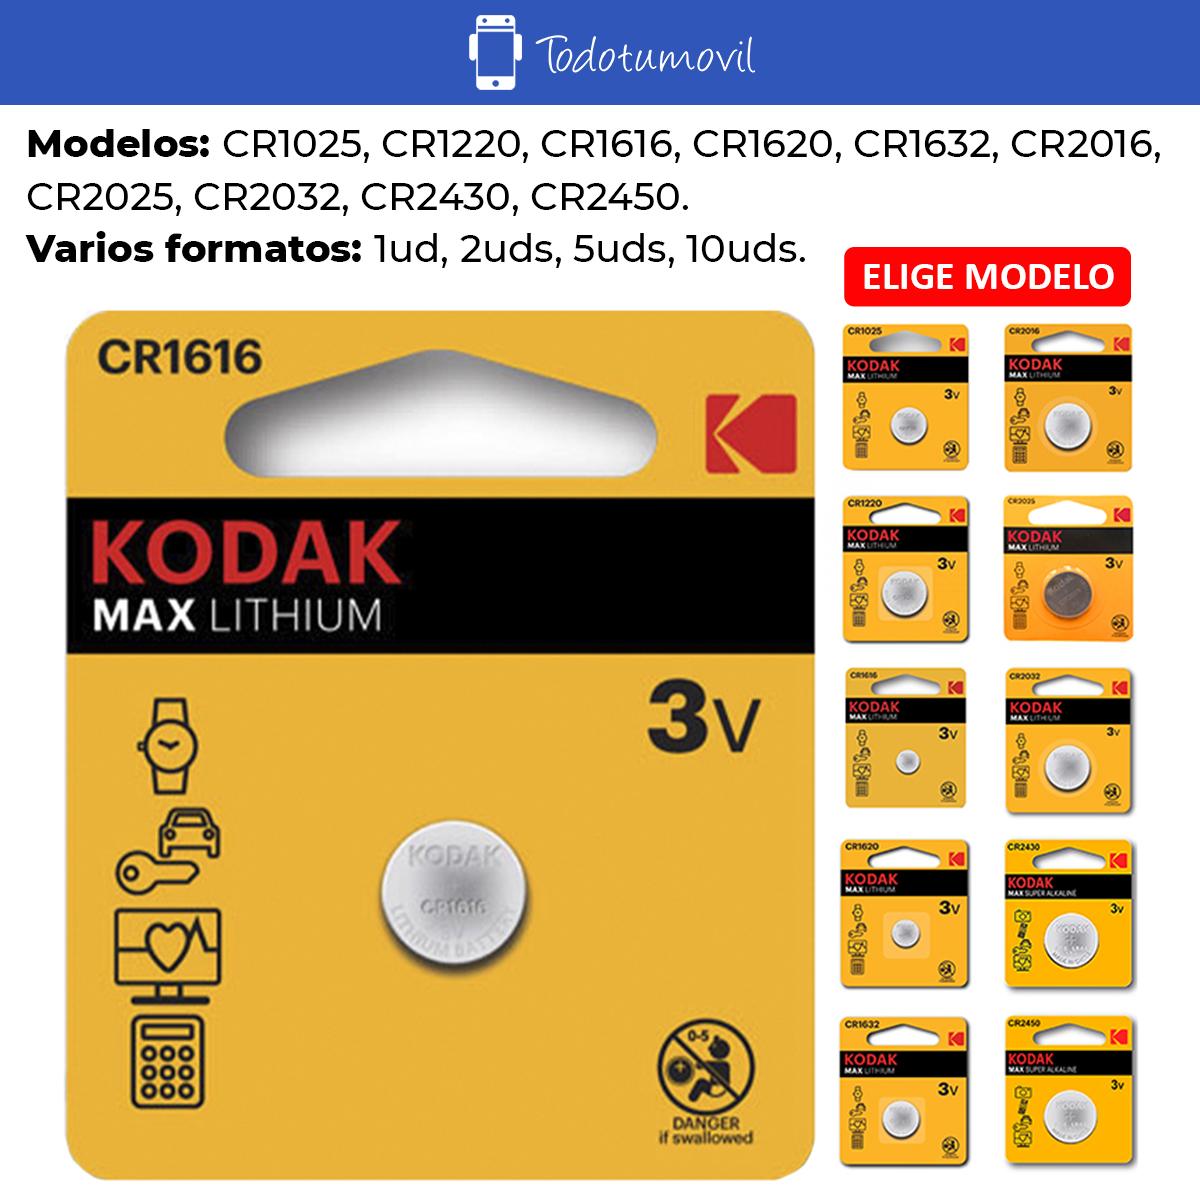 Kodak Pilas de boton Kodak bateria original Litio CR2032 3V en blister 5X Unidades 